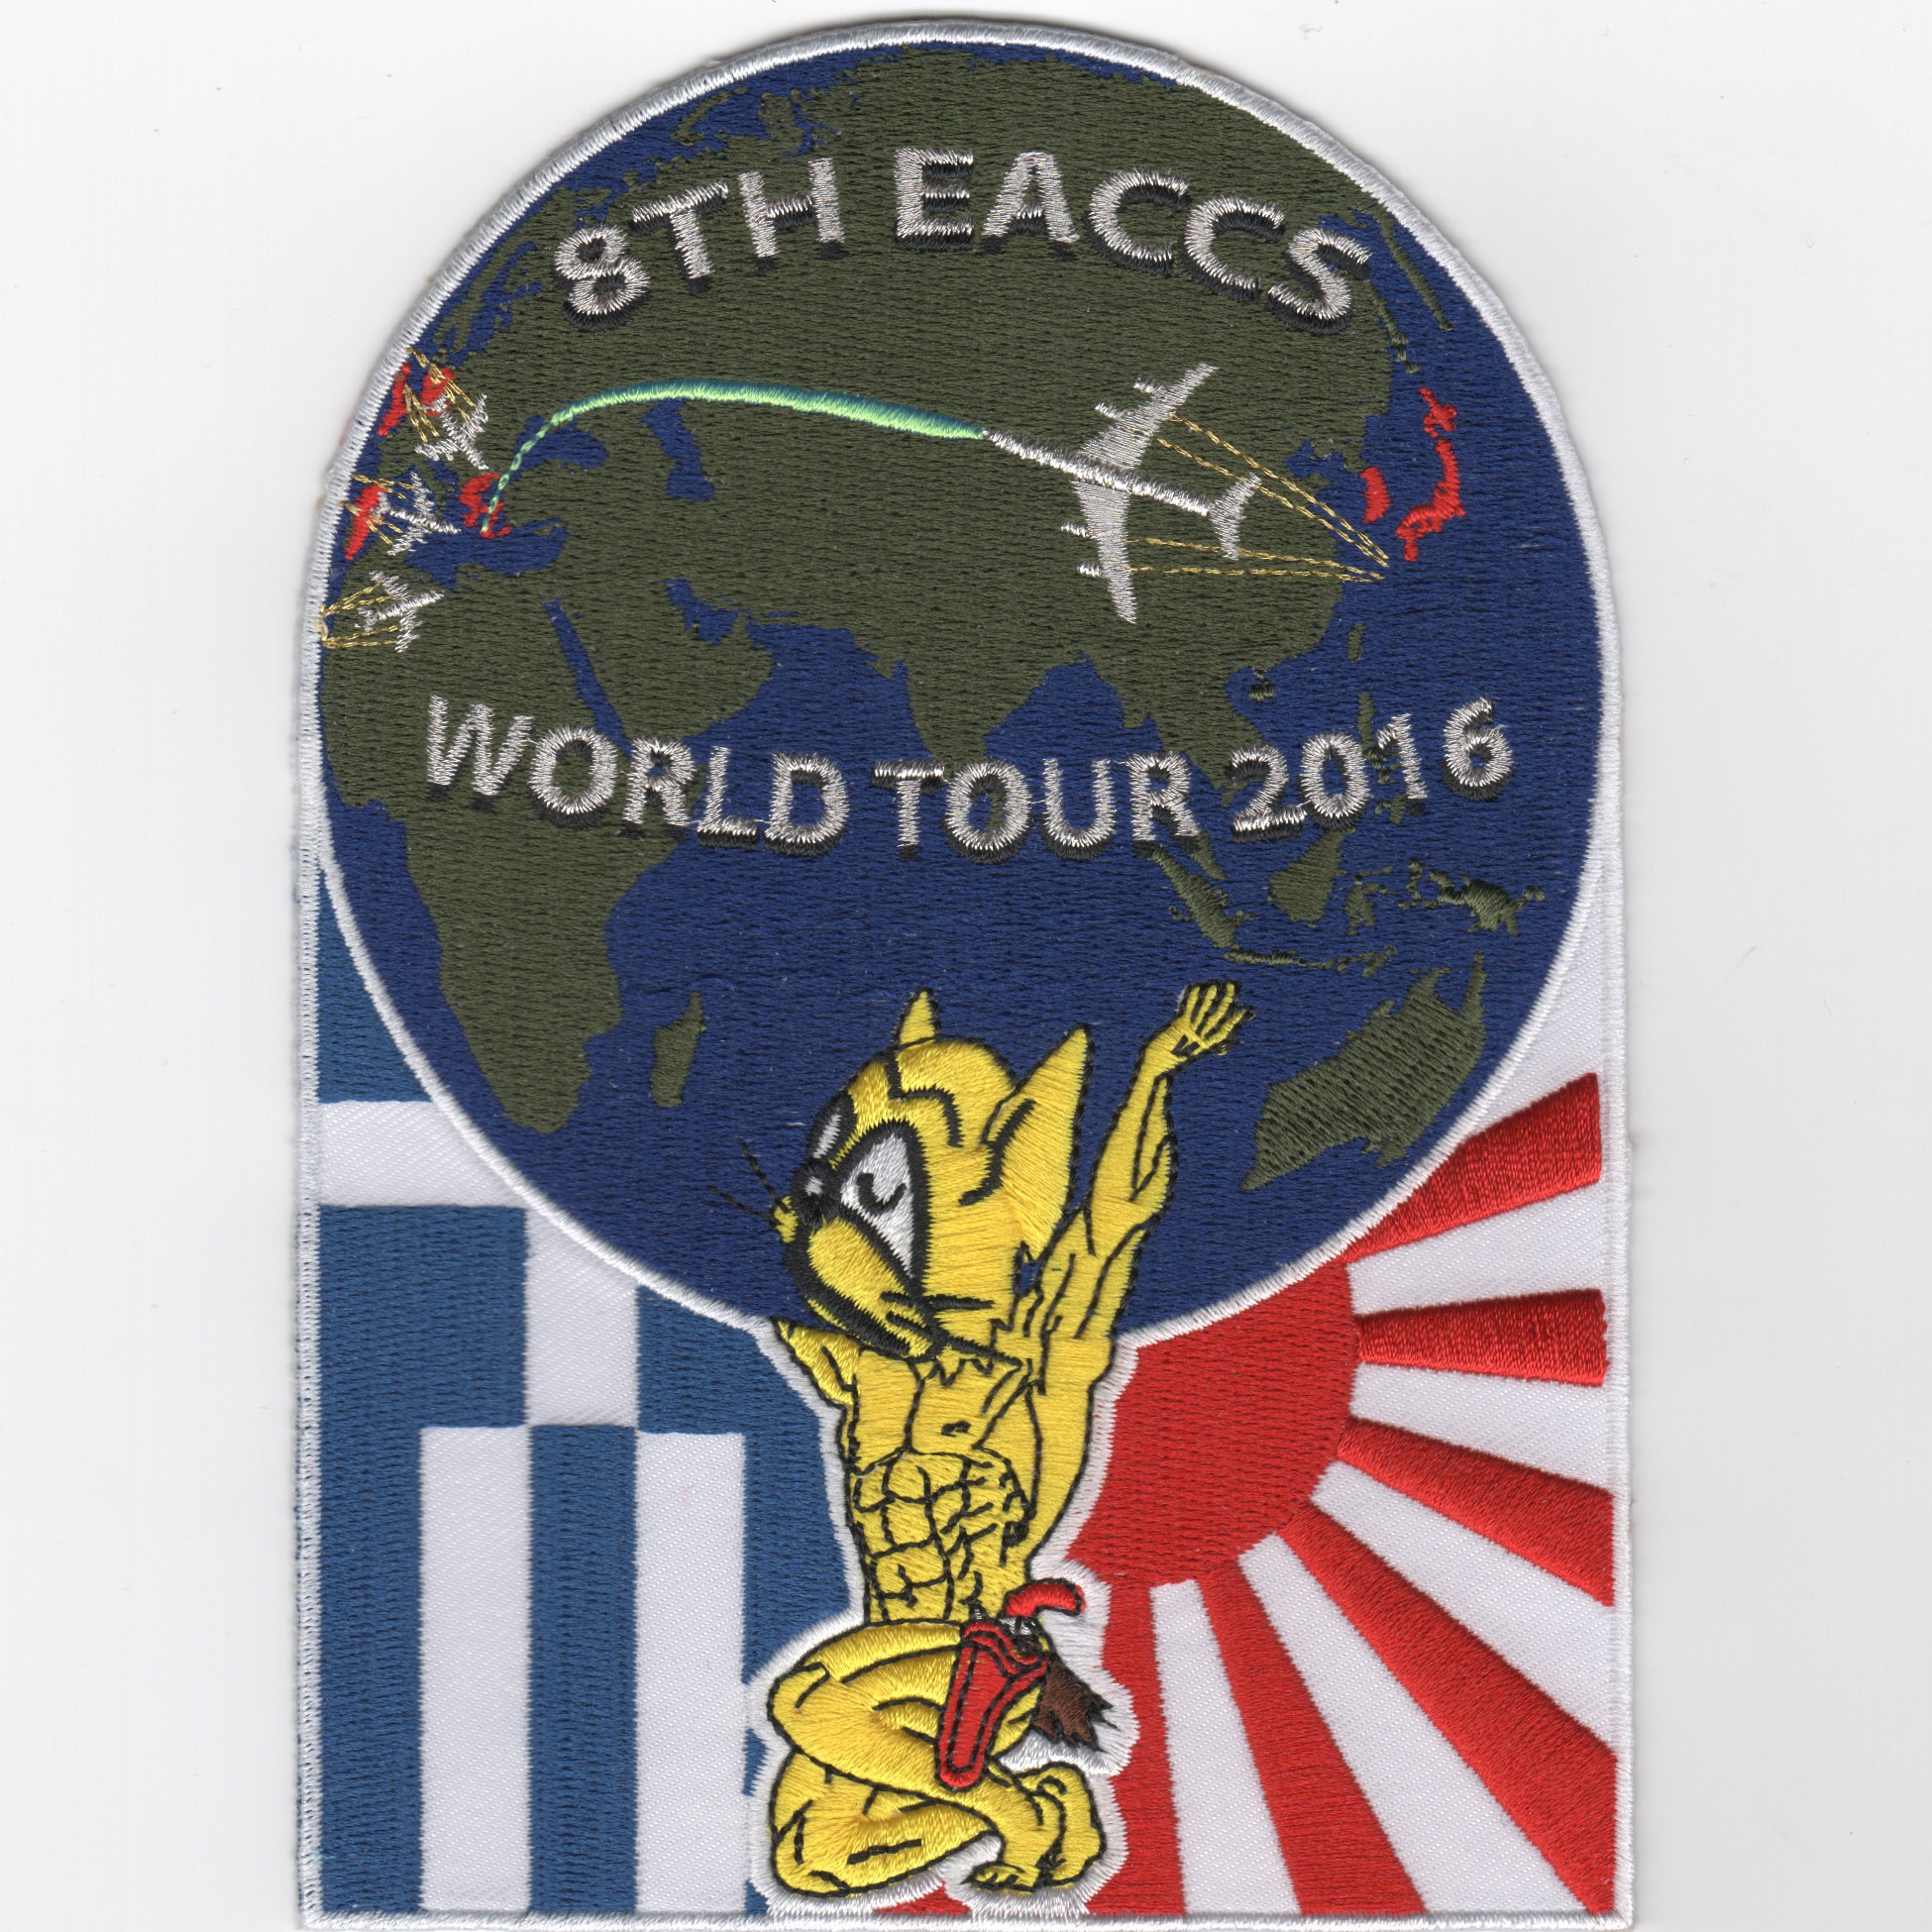 128 ACCS/8 EACCS 2016 'World Tour' Patch